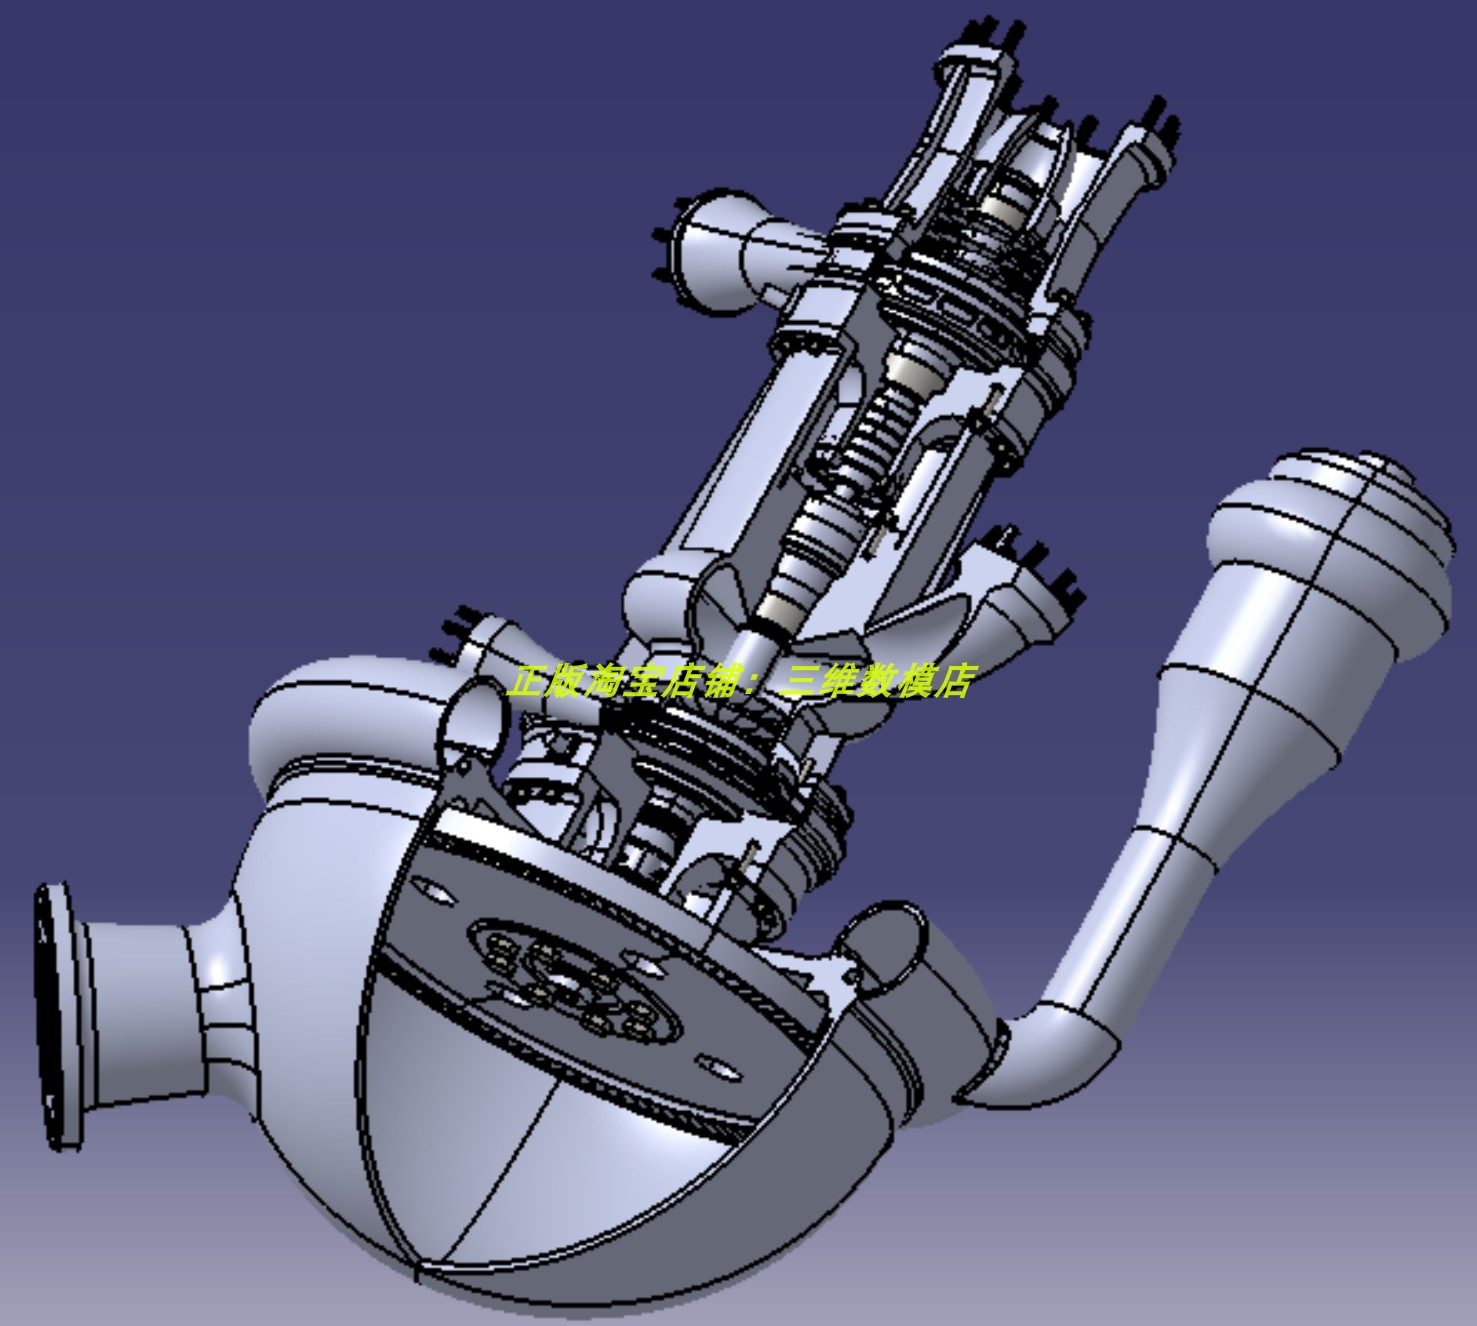 火箭发动机涡轮泵总成零件结构 外壳体剖切3D三维模型几何数模stp